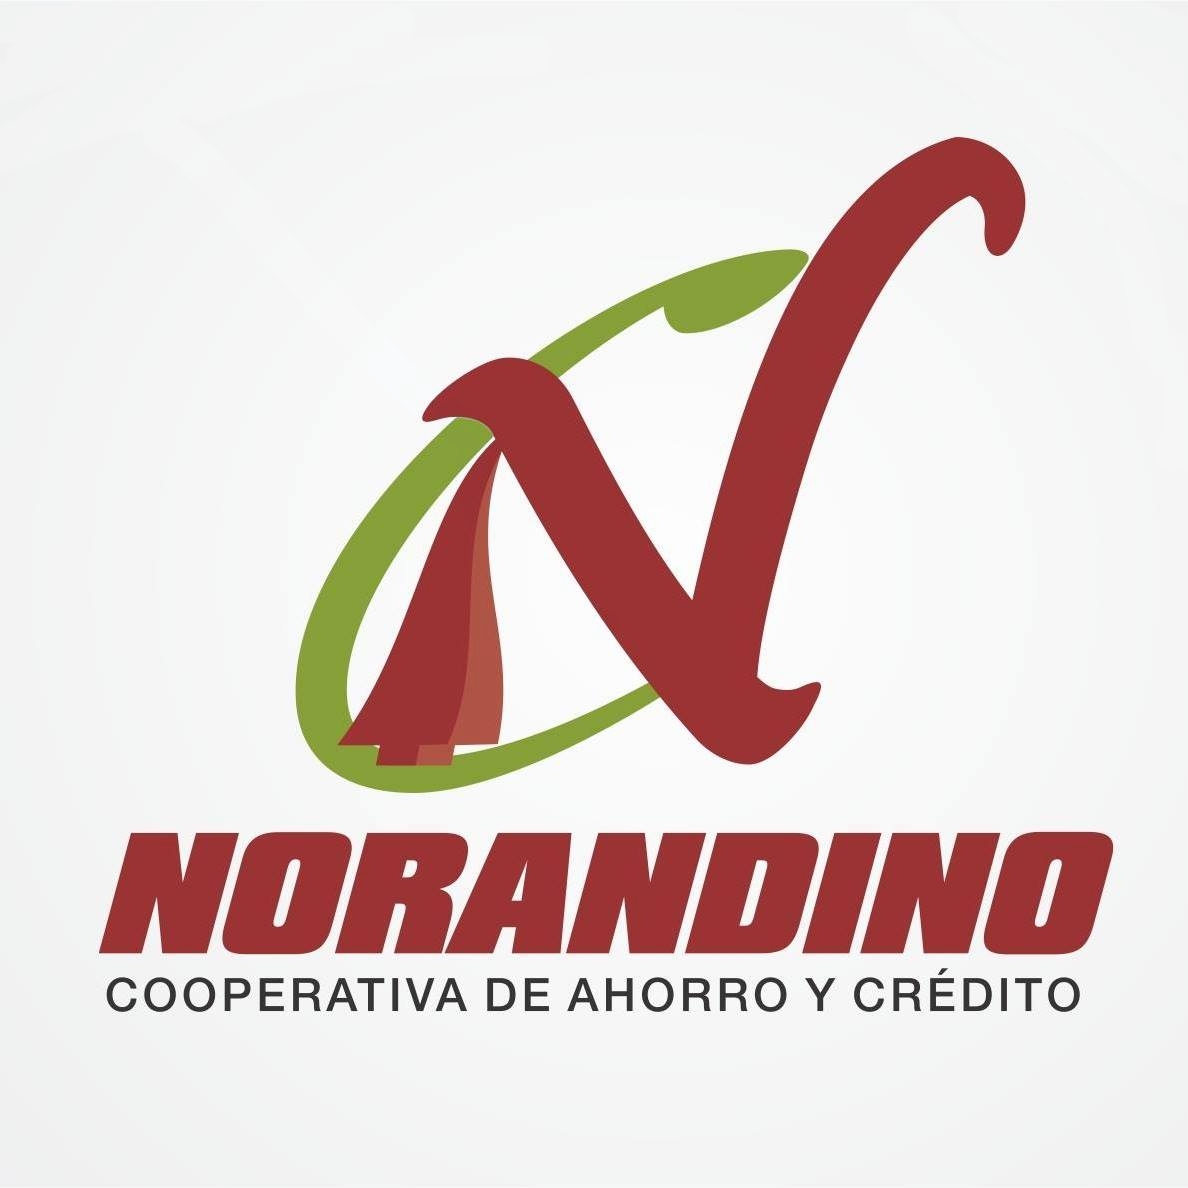 Norandino logo 1.jpg